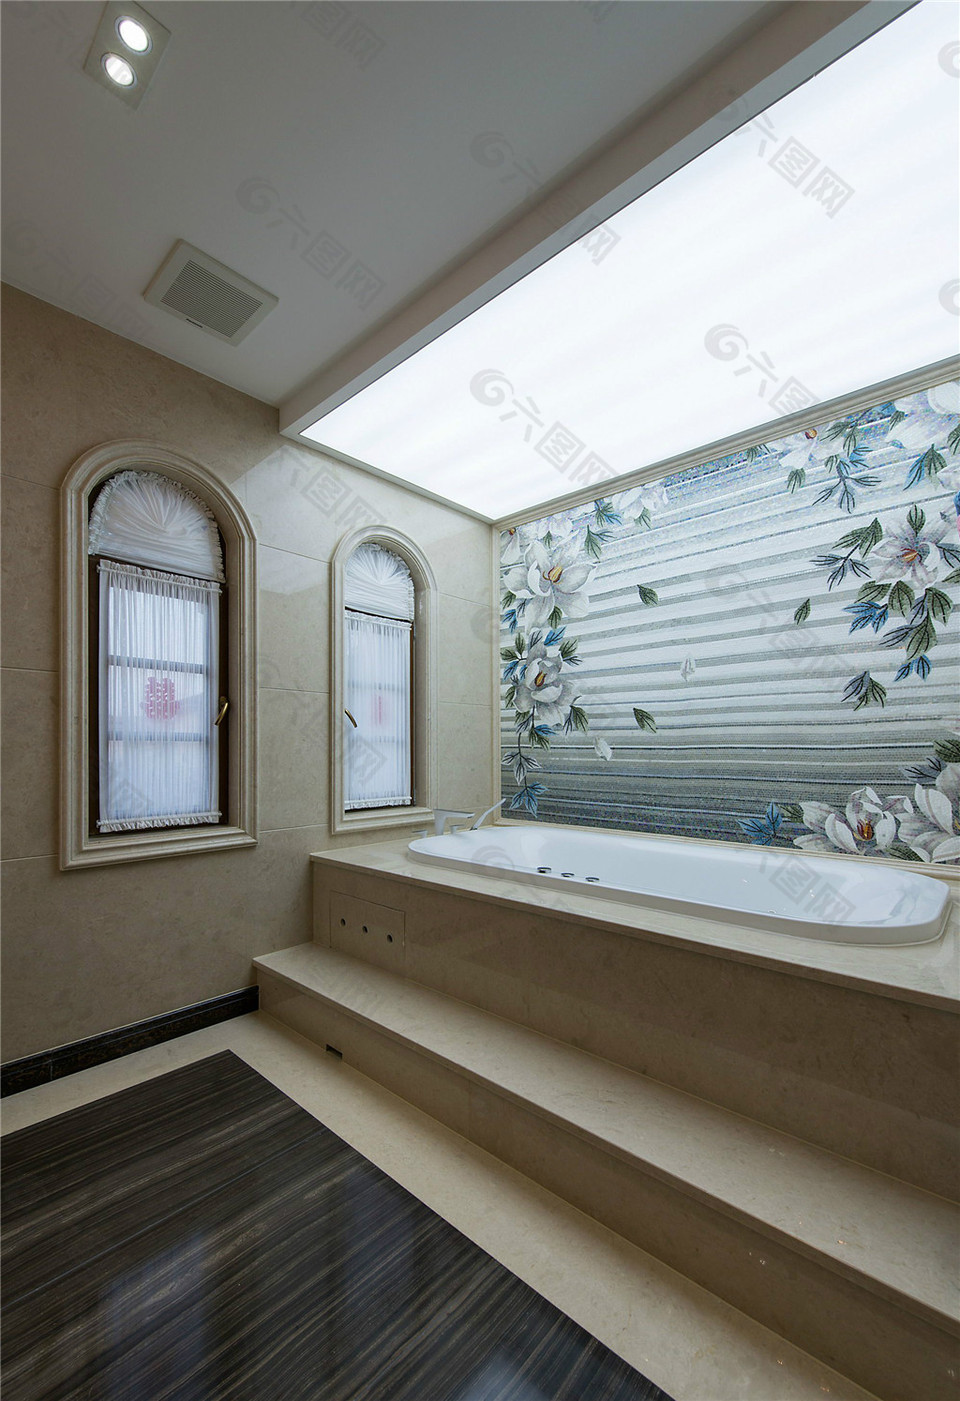 简约家居浴室装修效果图